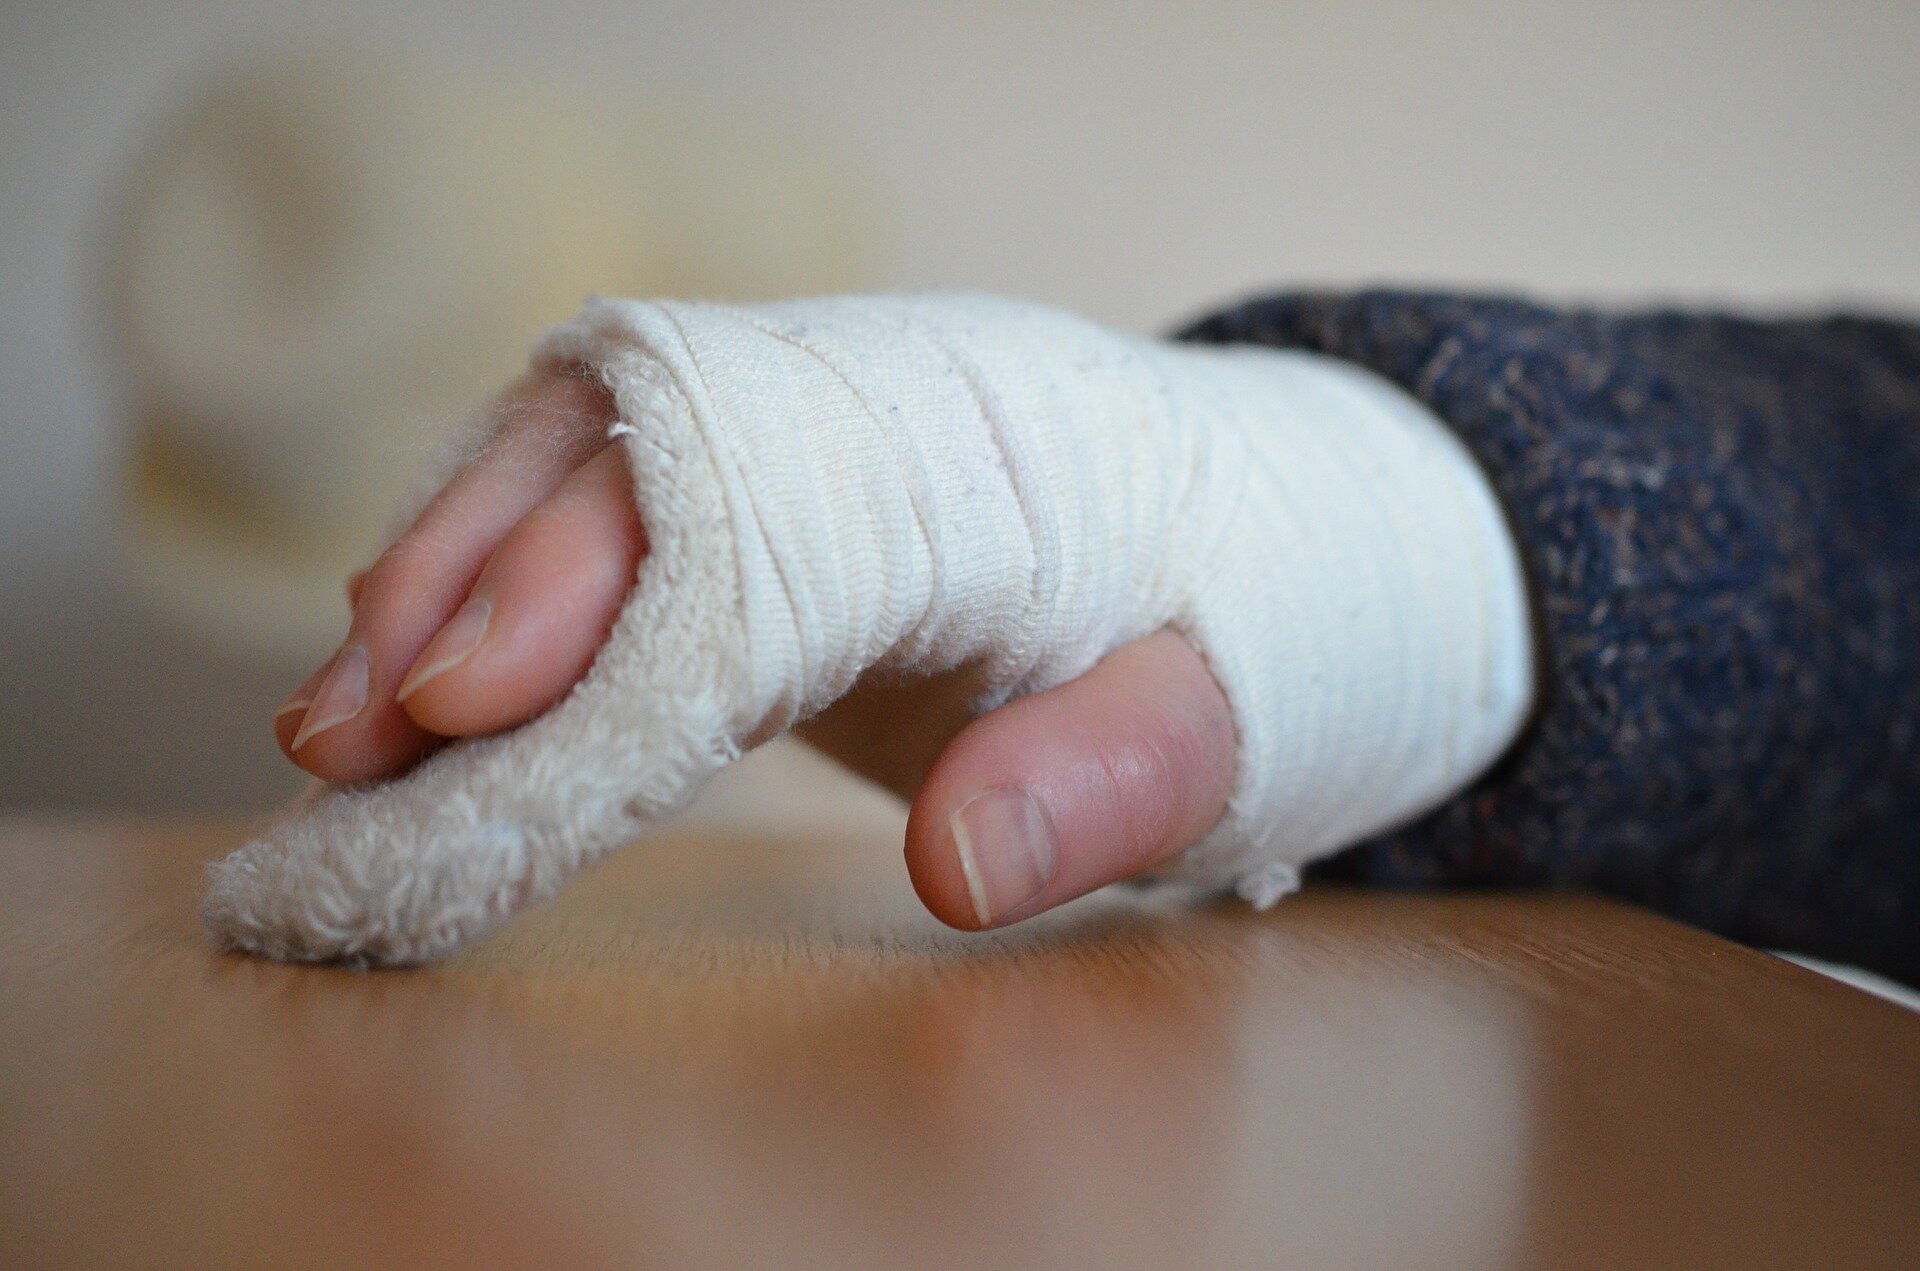 Fotografia przedstawia dłoń umieszczoną w gipsie medycznym owiniętą bandażem.